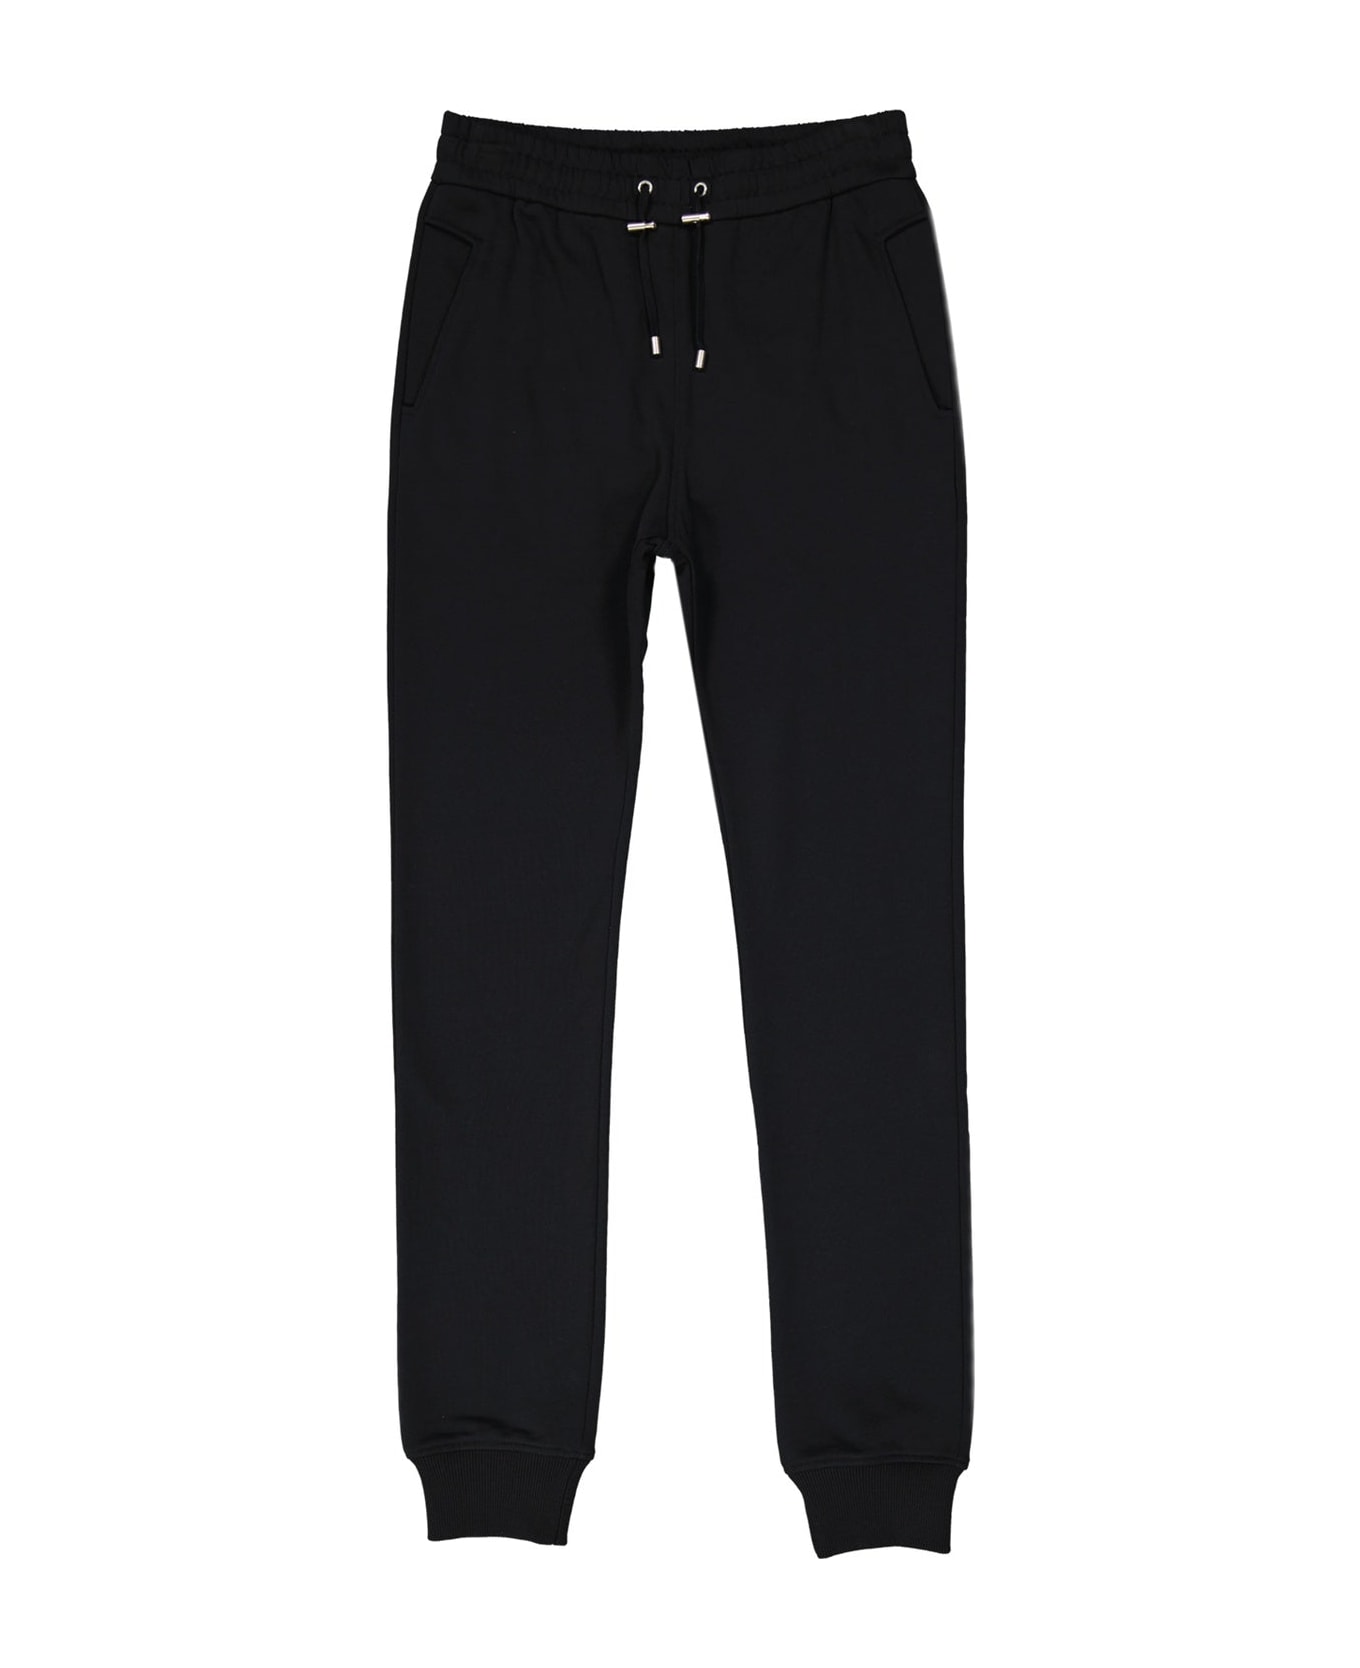 Balmain Cotton Sweatpants - Black